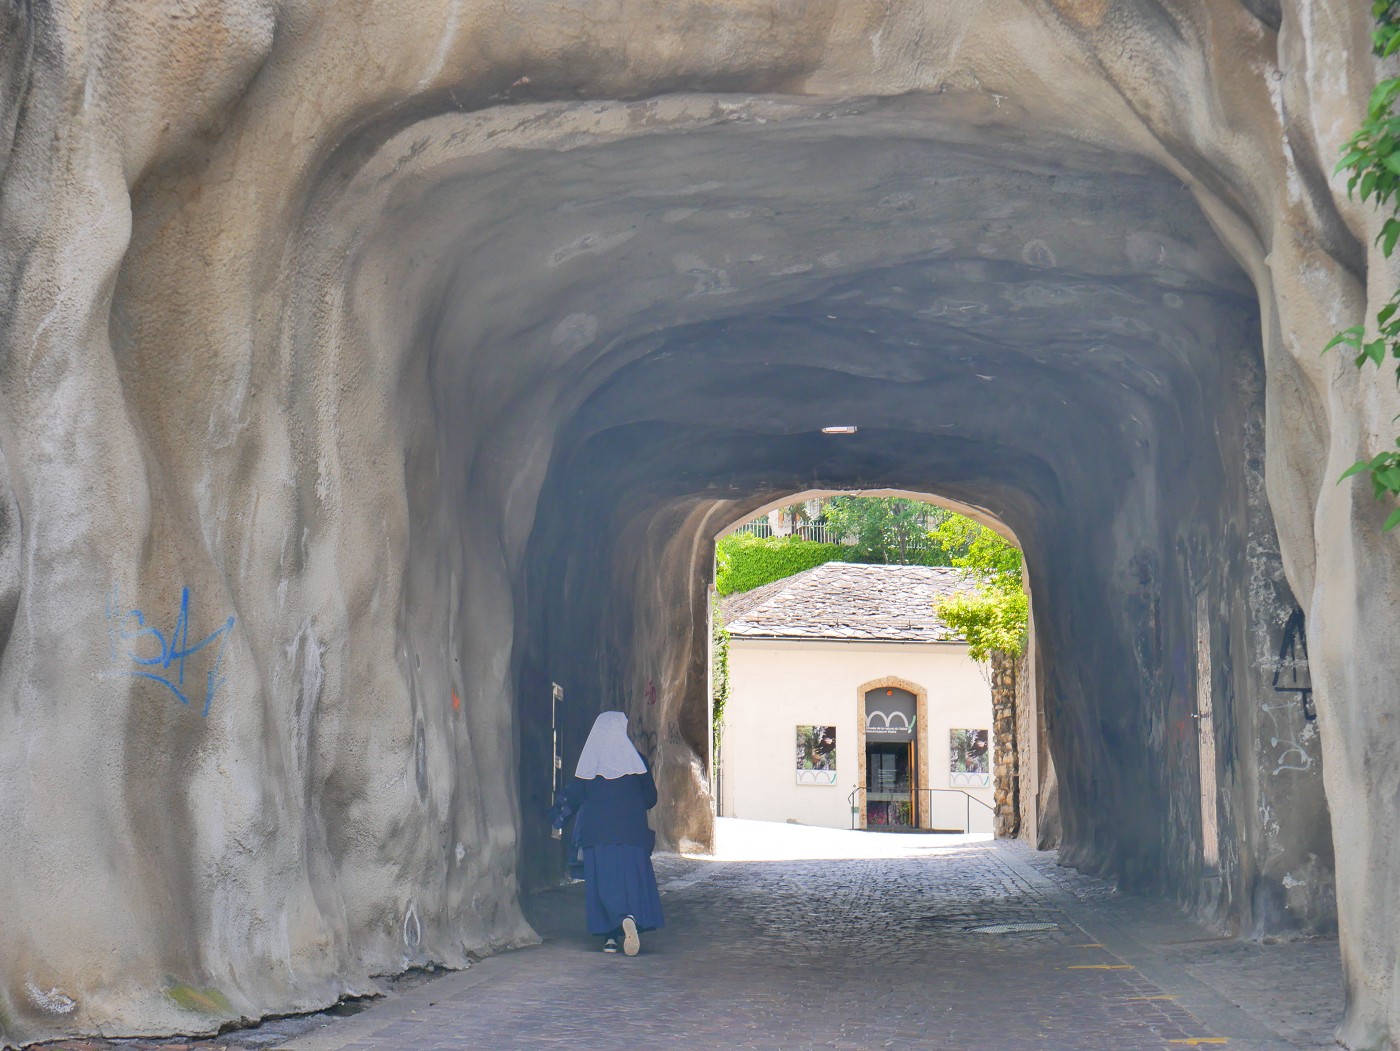 Nun in tunnel in Sion Valais Switzerland